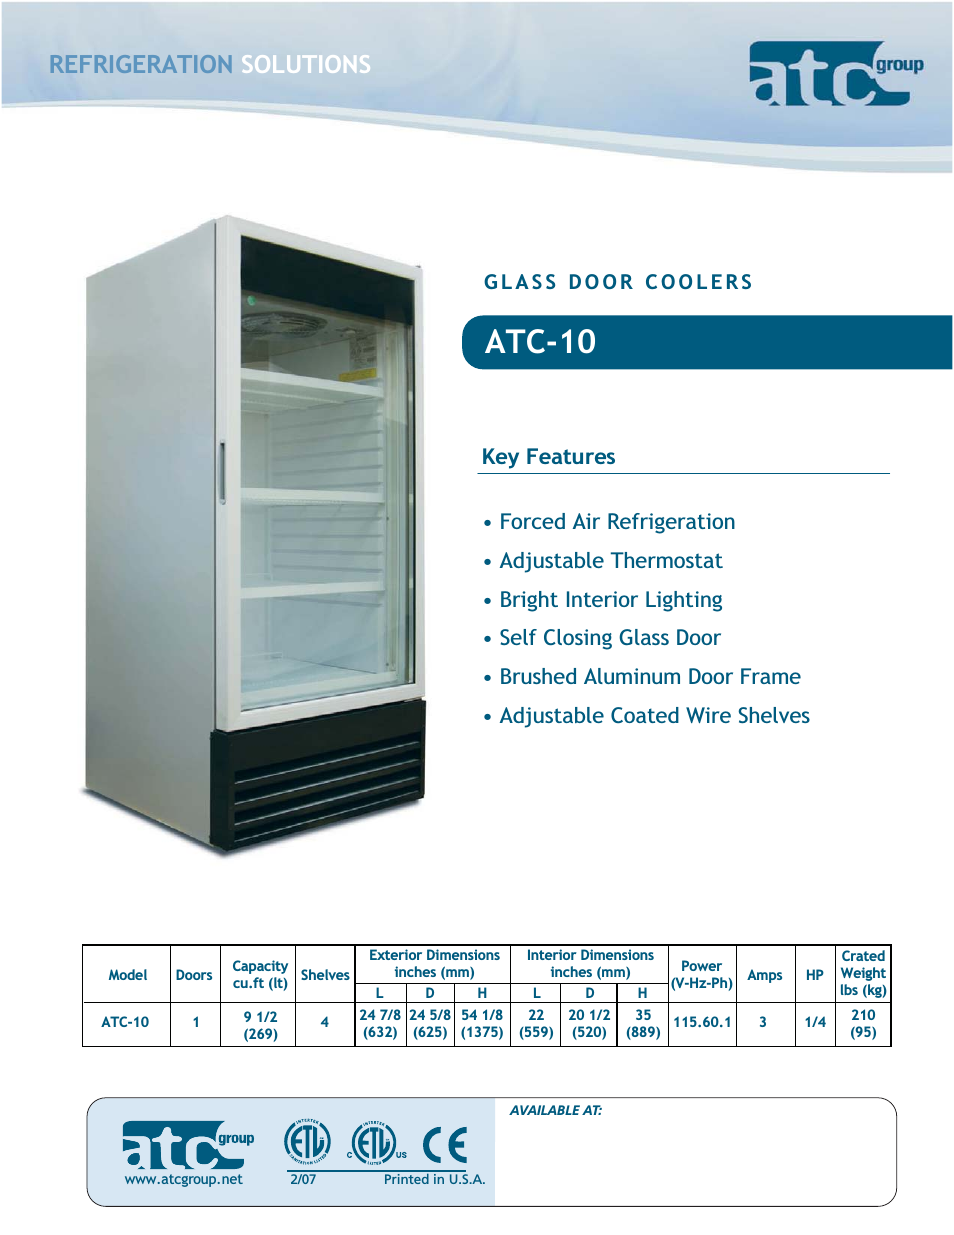 Glass Door Coolers ATC-10